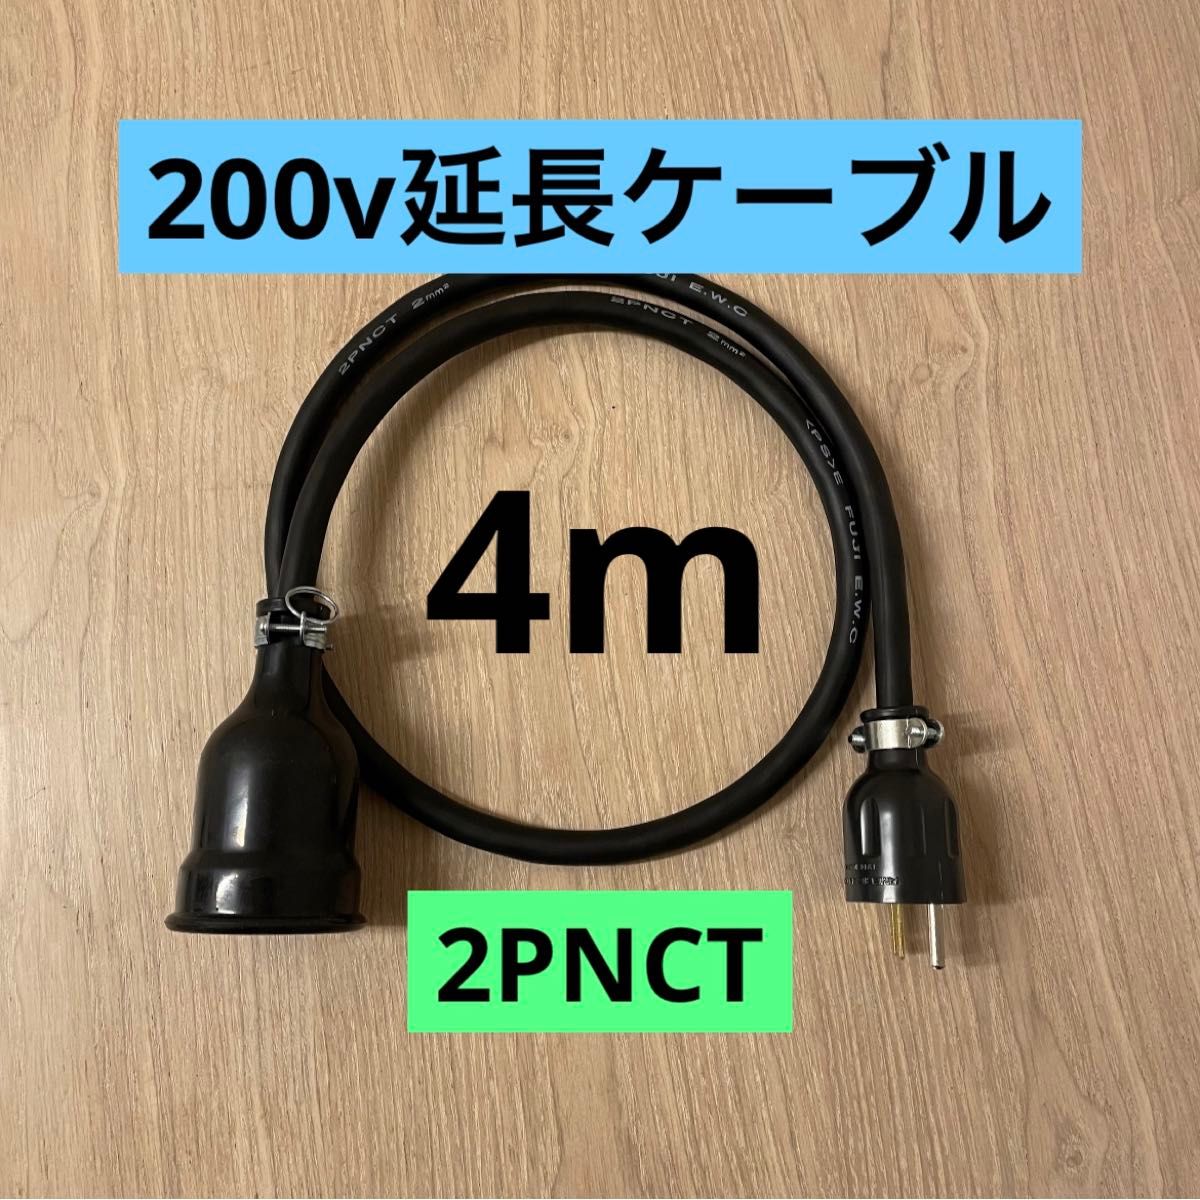 ★ 電気自動車コンセント★ 200V 充電器延長ケーブル2 4m 2PNCTコード